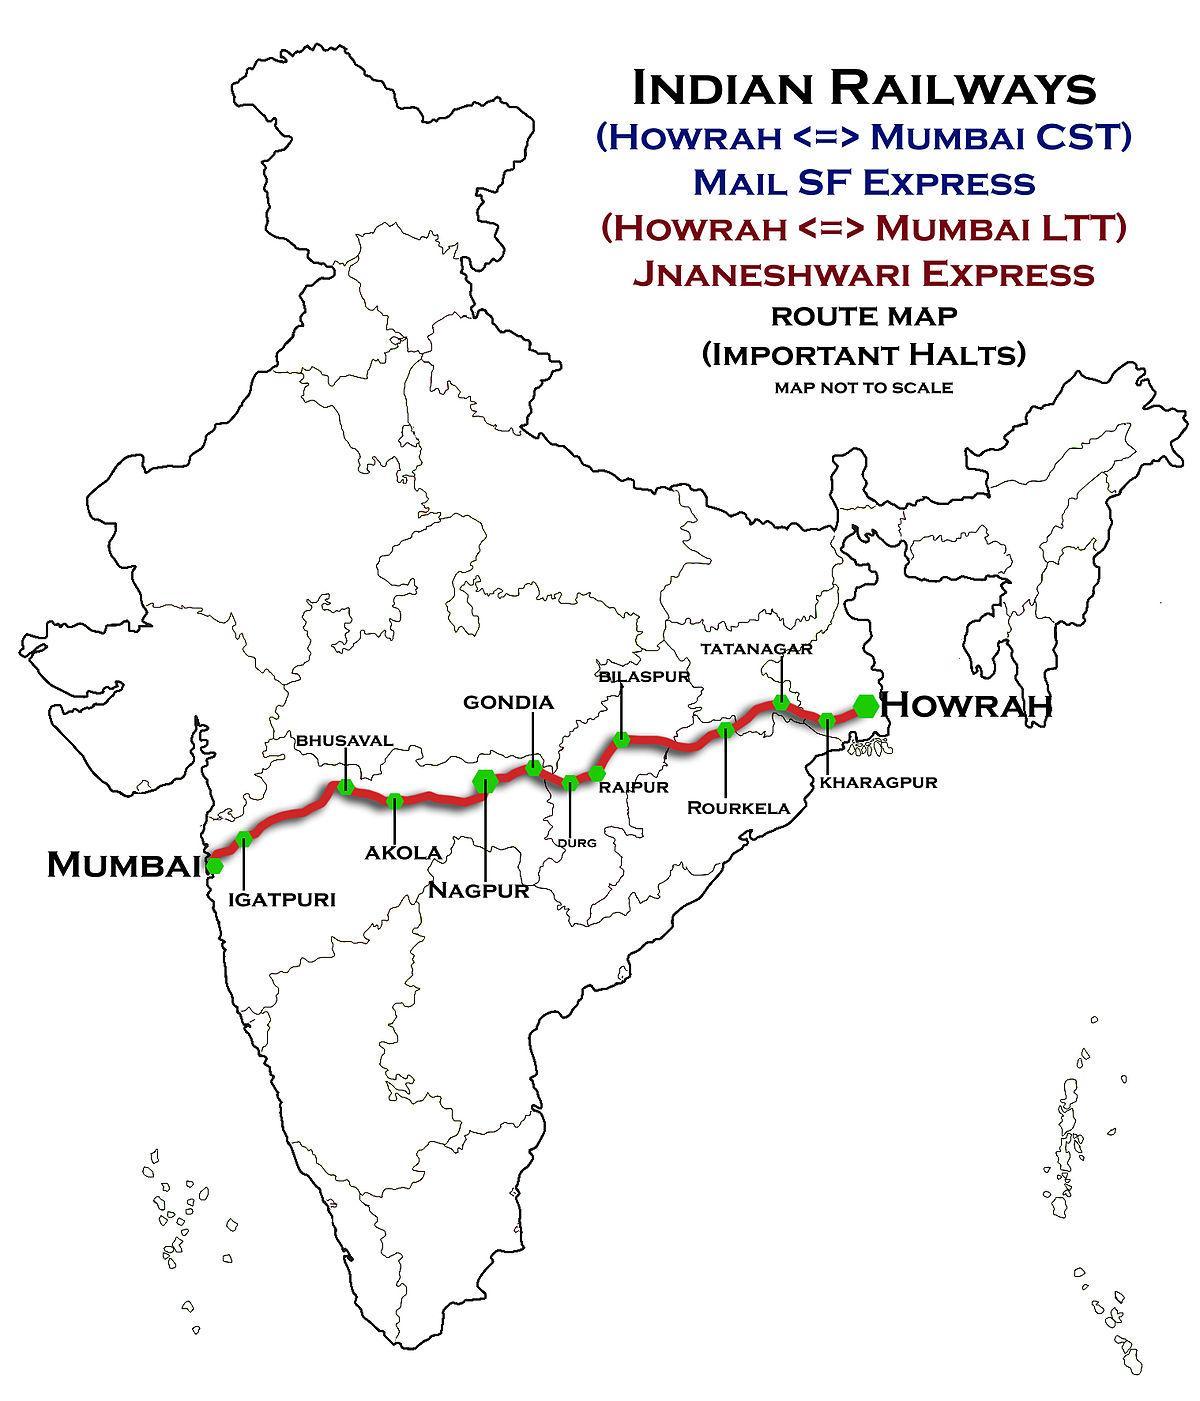 ناگپور ممبئی ایکسپریس ہائی وے کا نقشہ